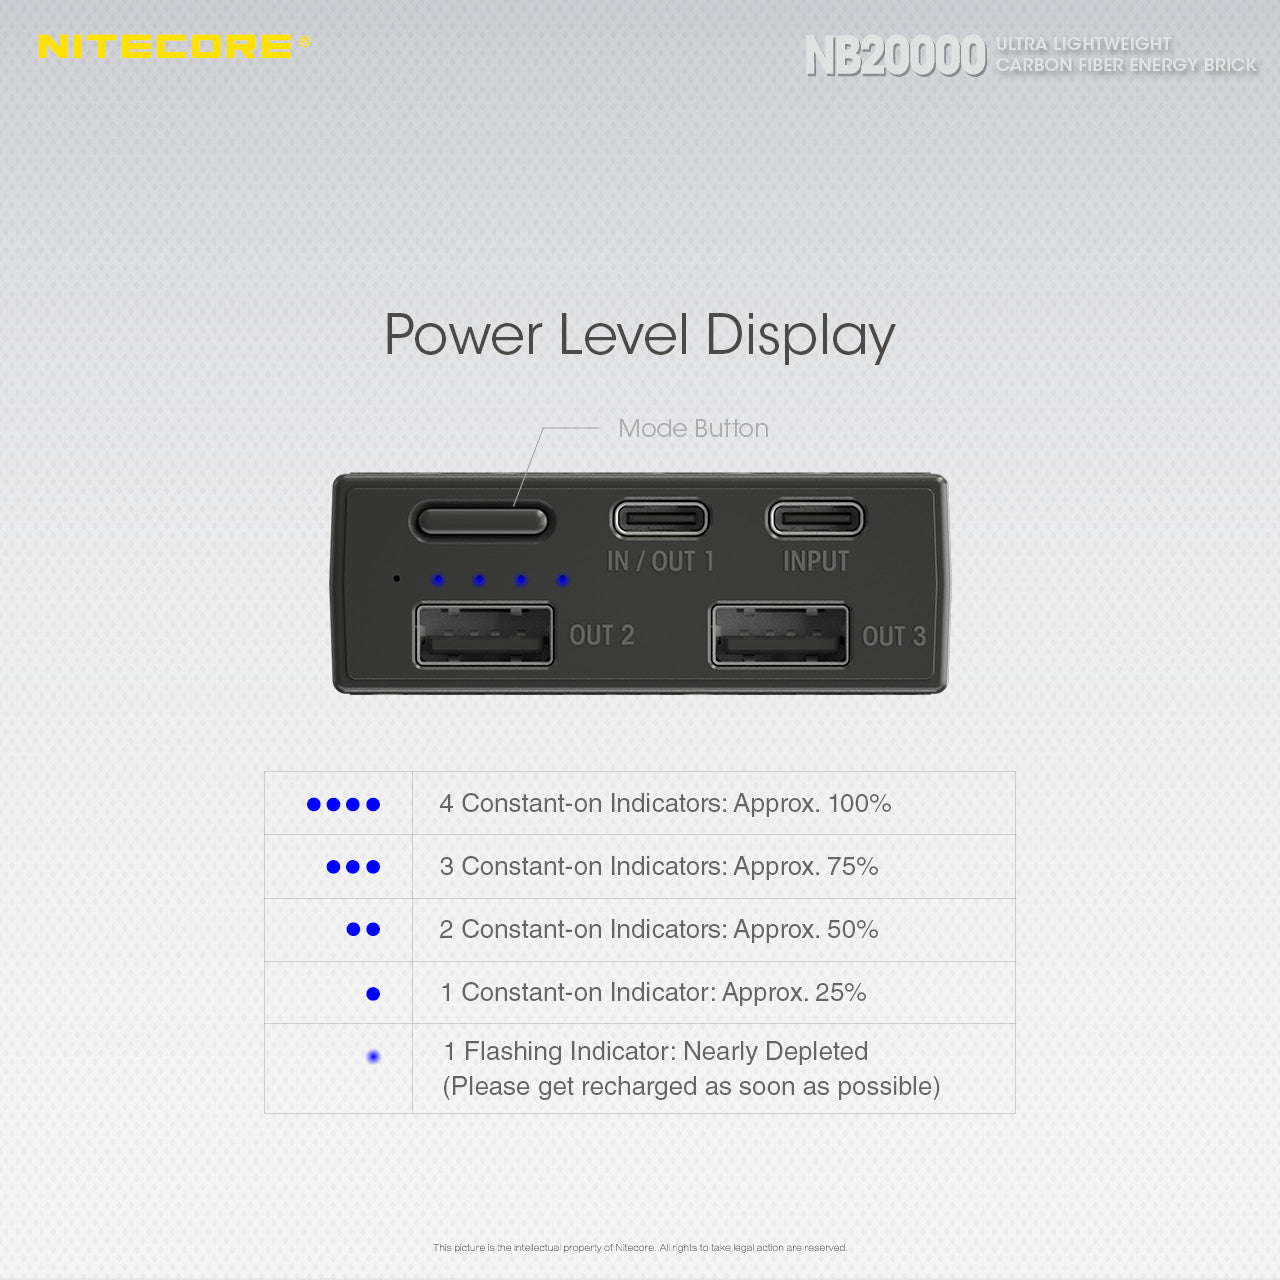 Nitecore NB20000 QC USB & USB-C 4 Port 20,000 mah Power Bank (REV.2)